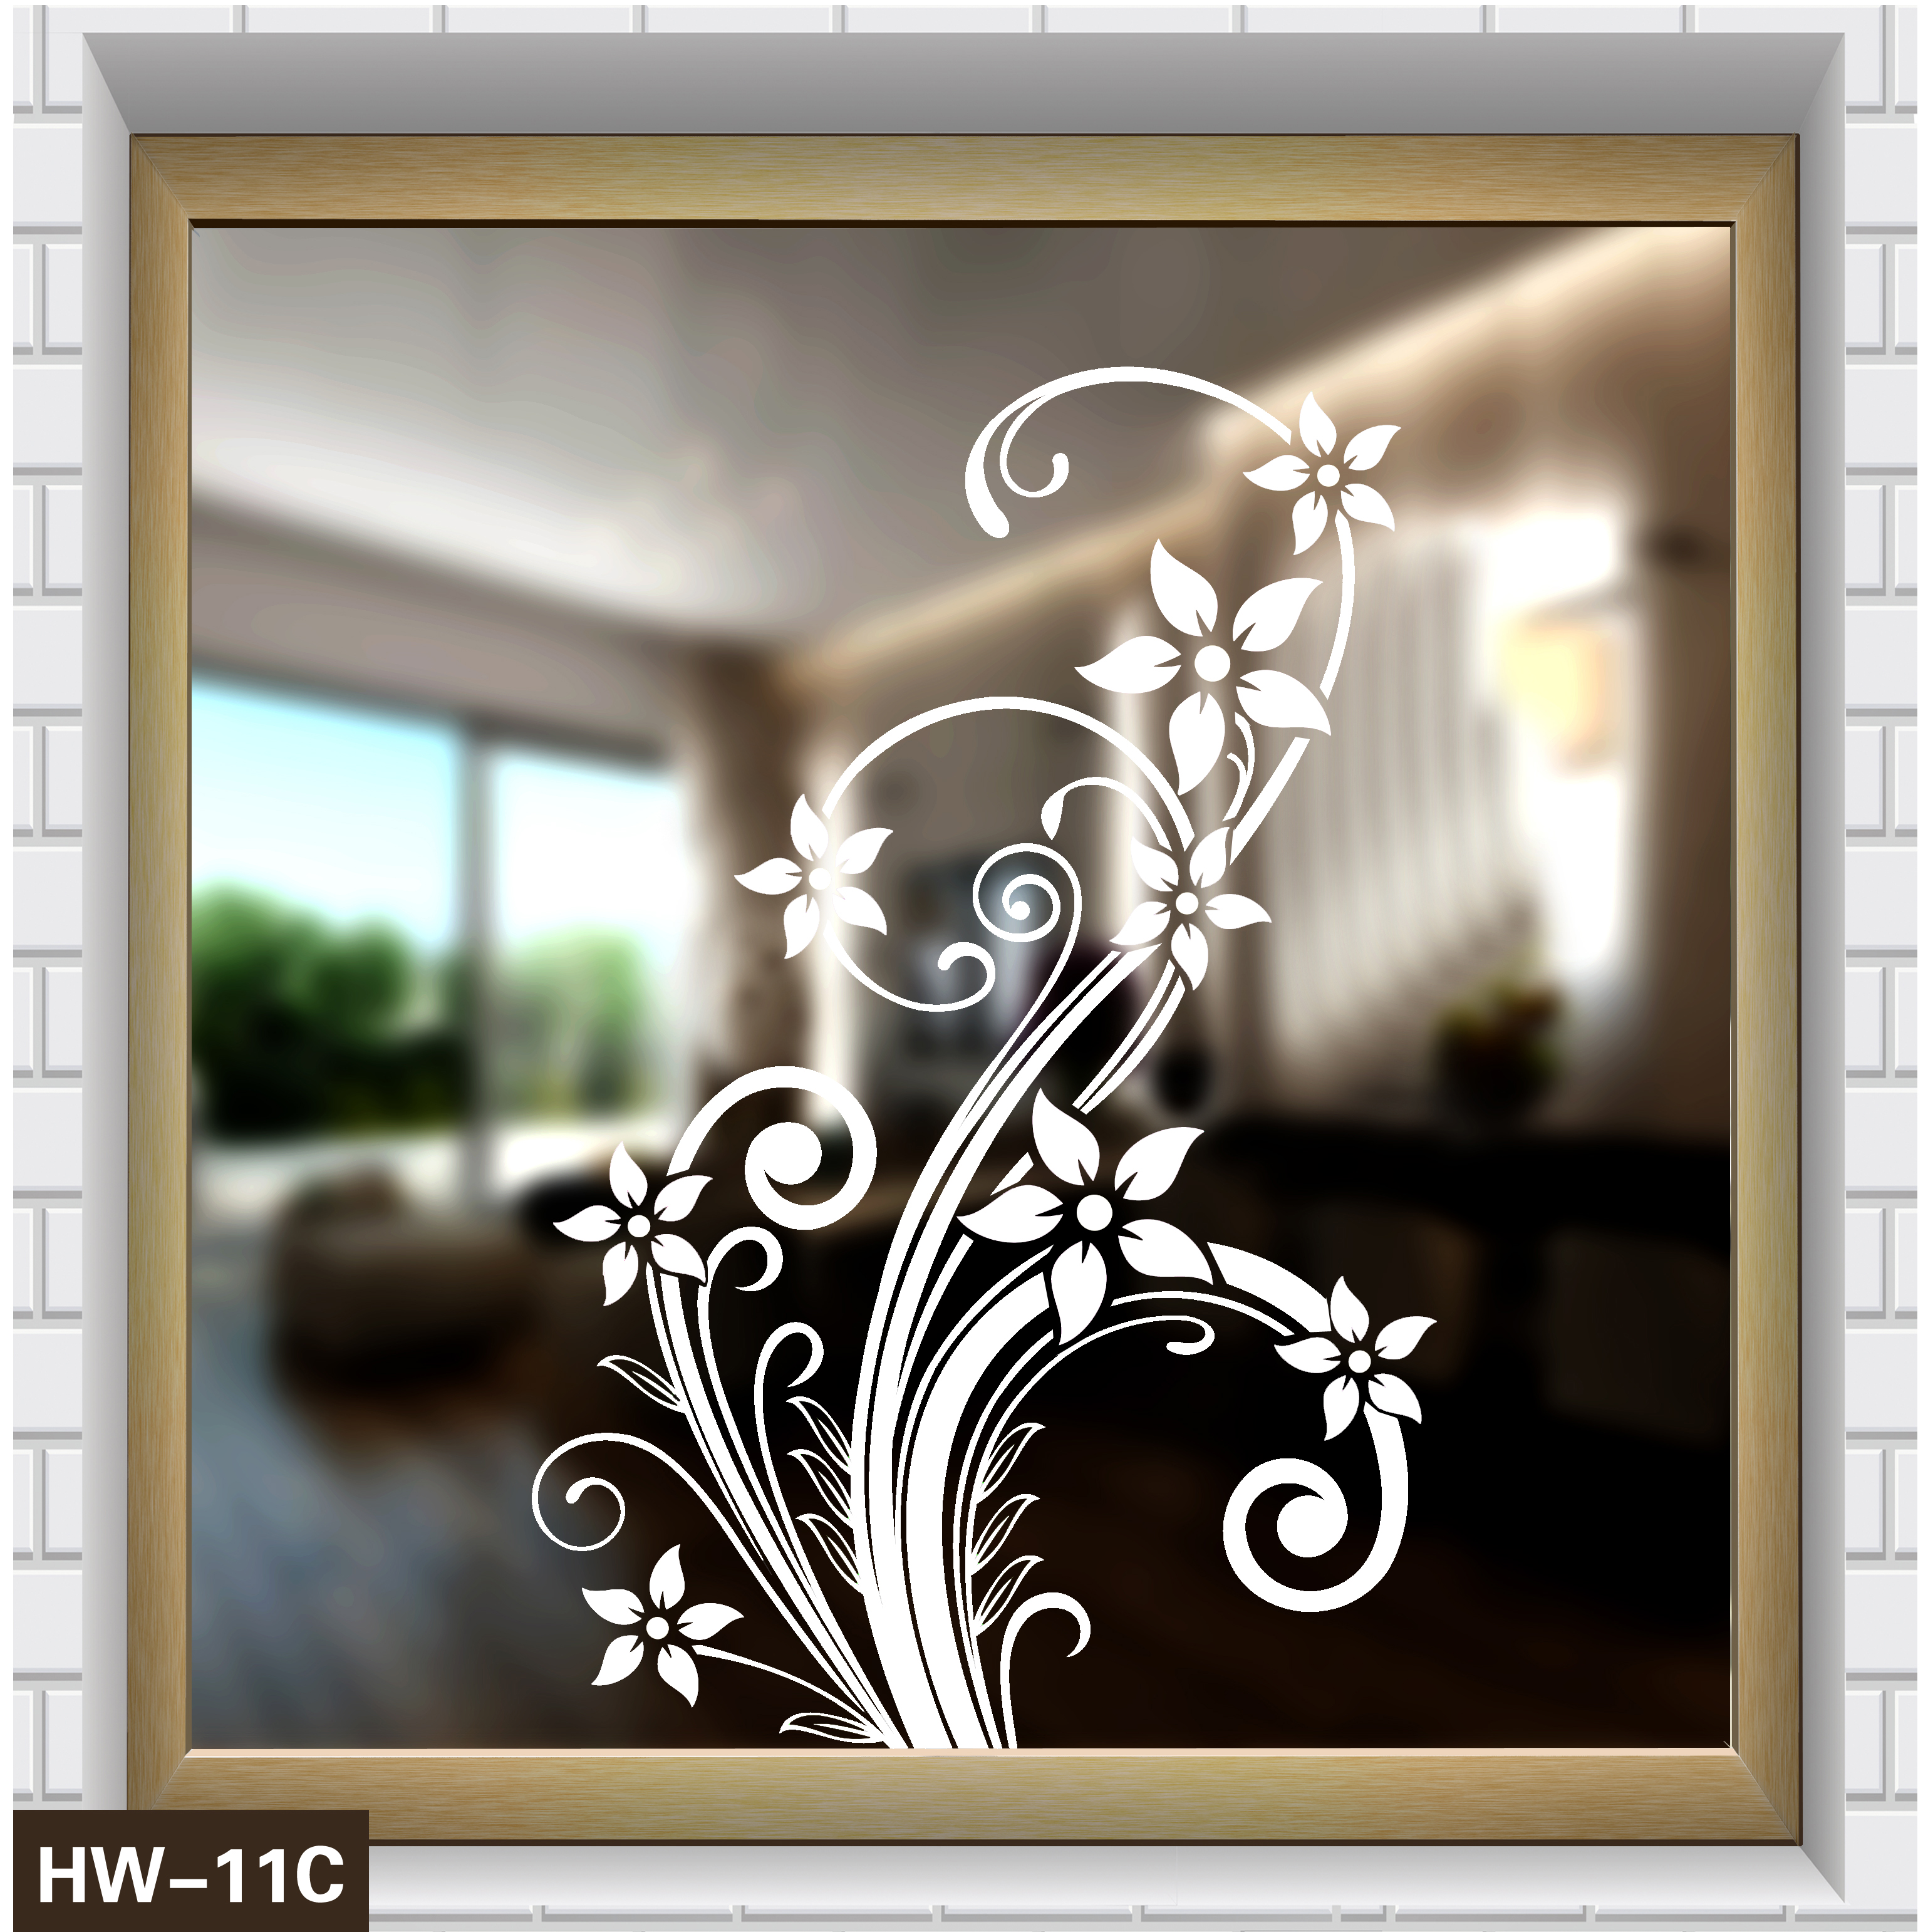 家居装饰——花纹系列玻璃窗贴第十一款